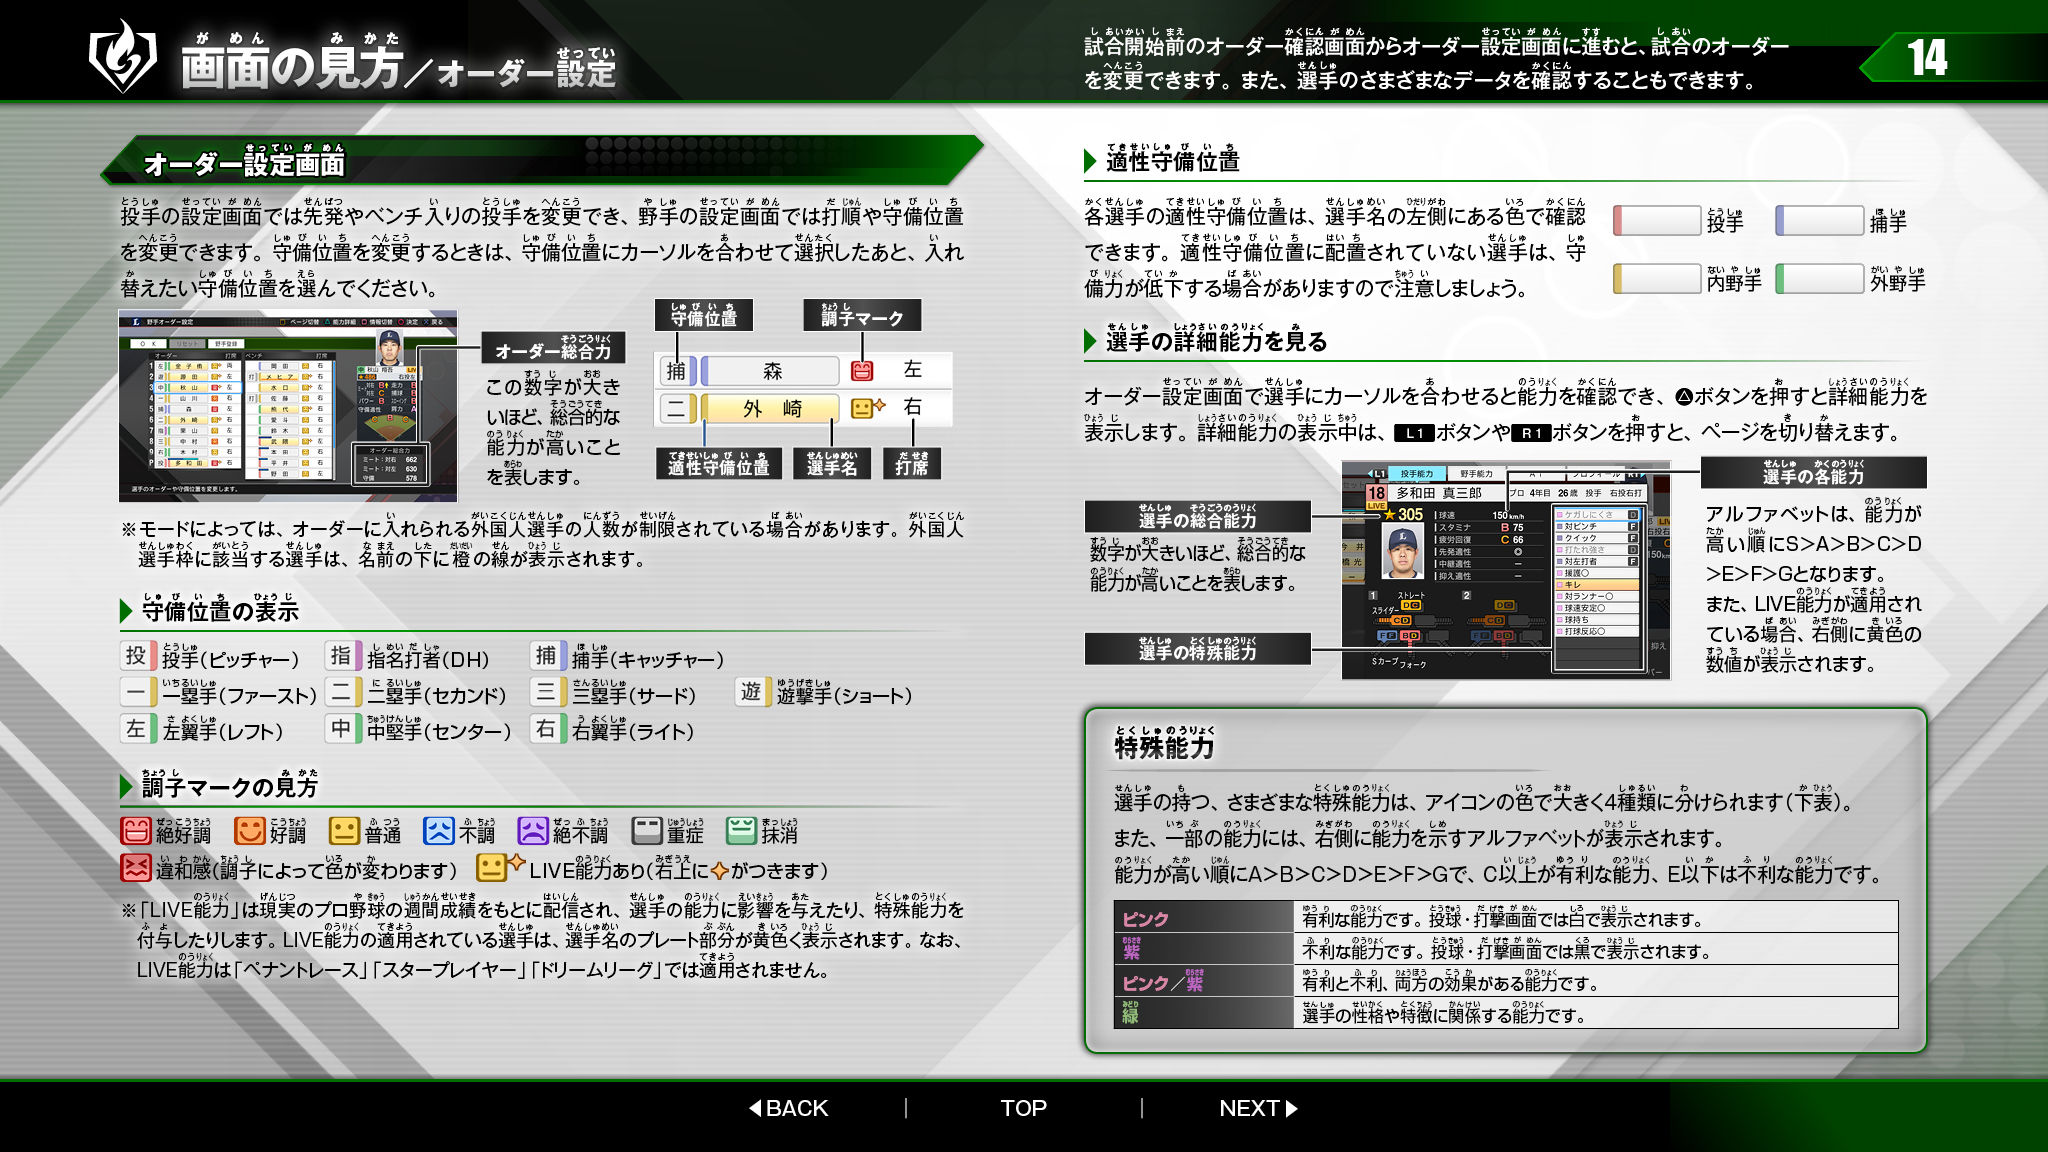 Ps4 Vita プロ野球スピリッツ19 のwebマニュアル 操作方法 各モードの説明など Gamefavo